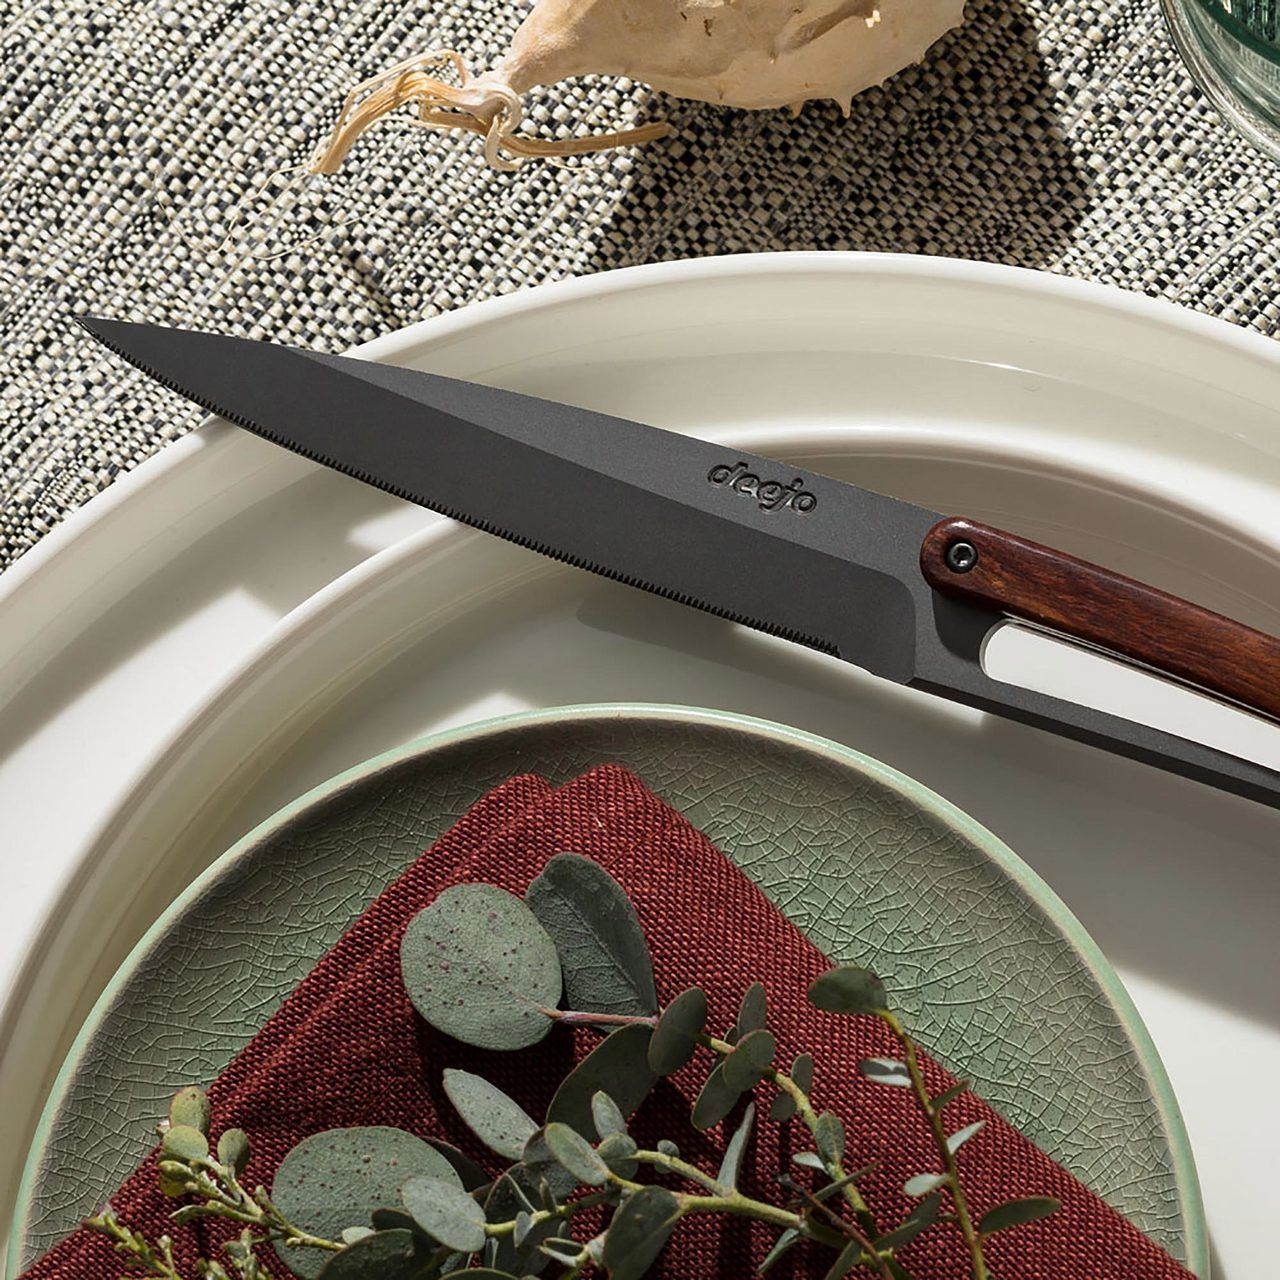 6 Deejo steak knives Serrated, Coral wood - STEAK KNIVES - TABLEWARE &  KITCHEN